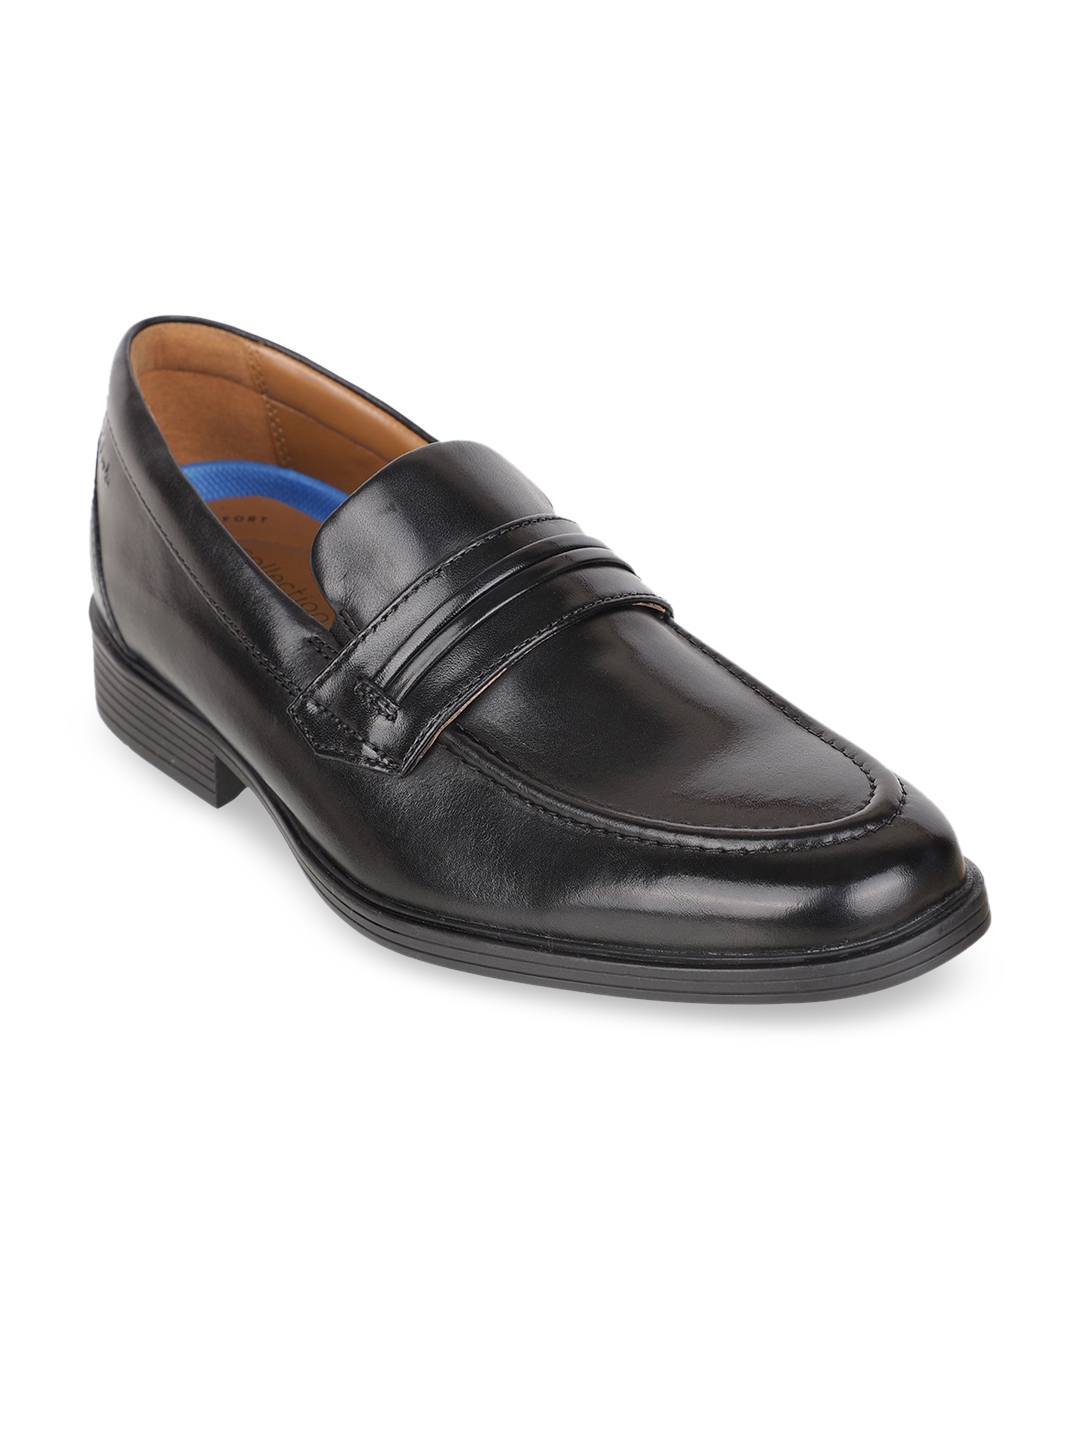 Buy Clarks Men Black Solid Leather Formal Slip Ons - Formal Shoes for ...